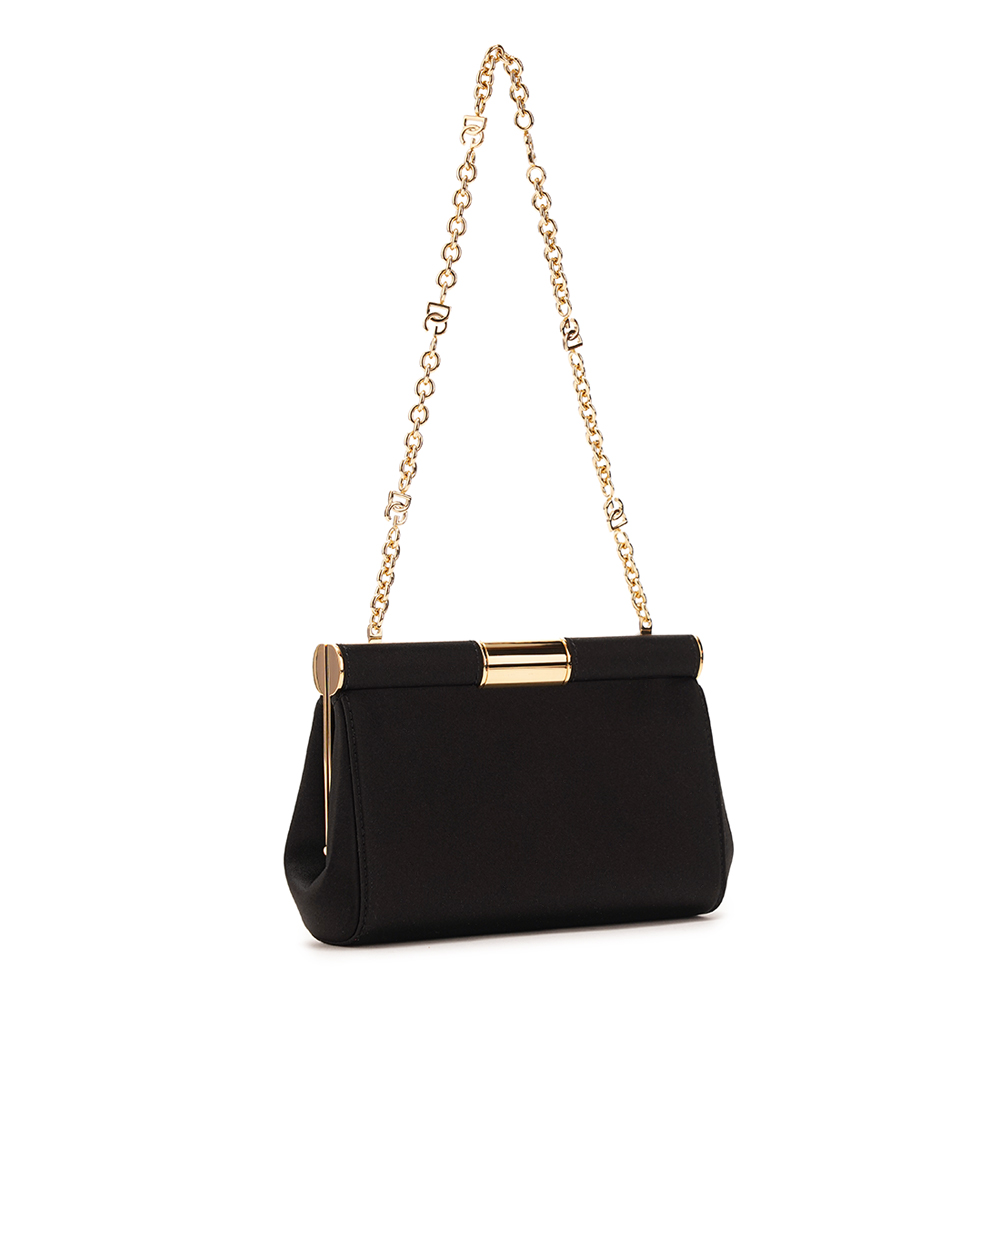 Кожаная сумка Marlene Small Dolce&Gabbana BB7635-A7630, черный цвет • Купить в интернет-магазине Kameron